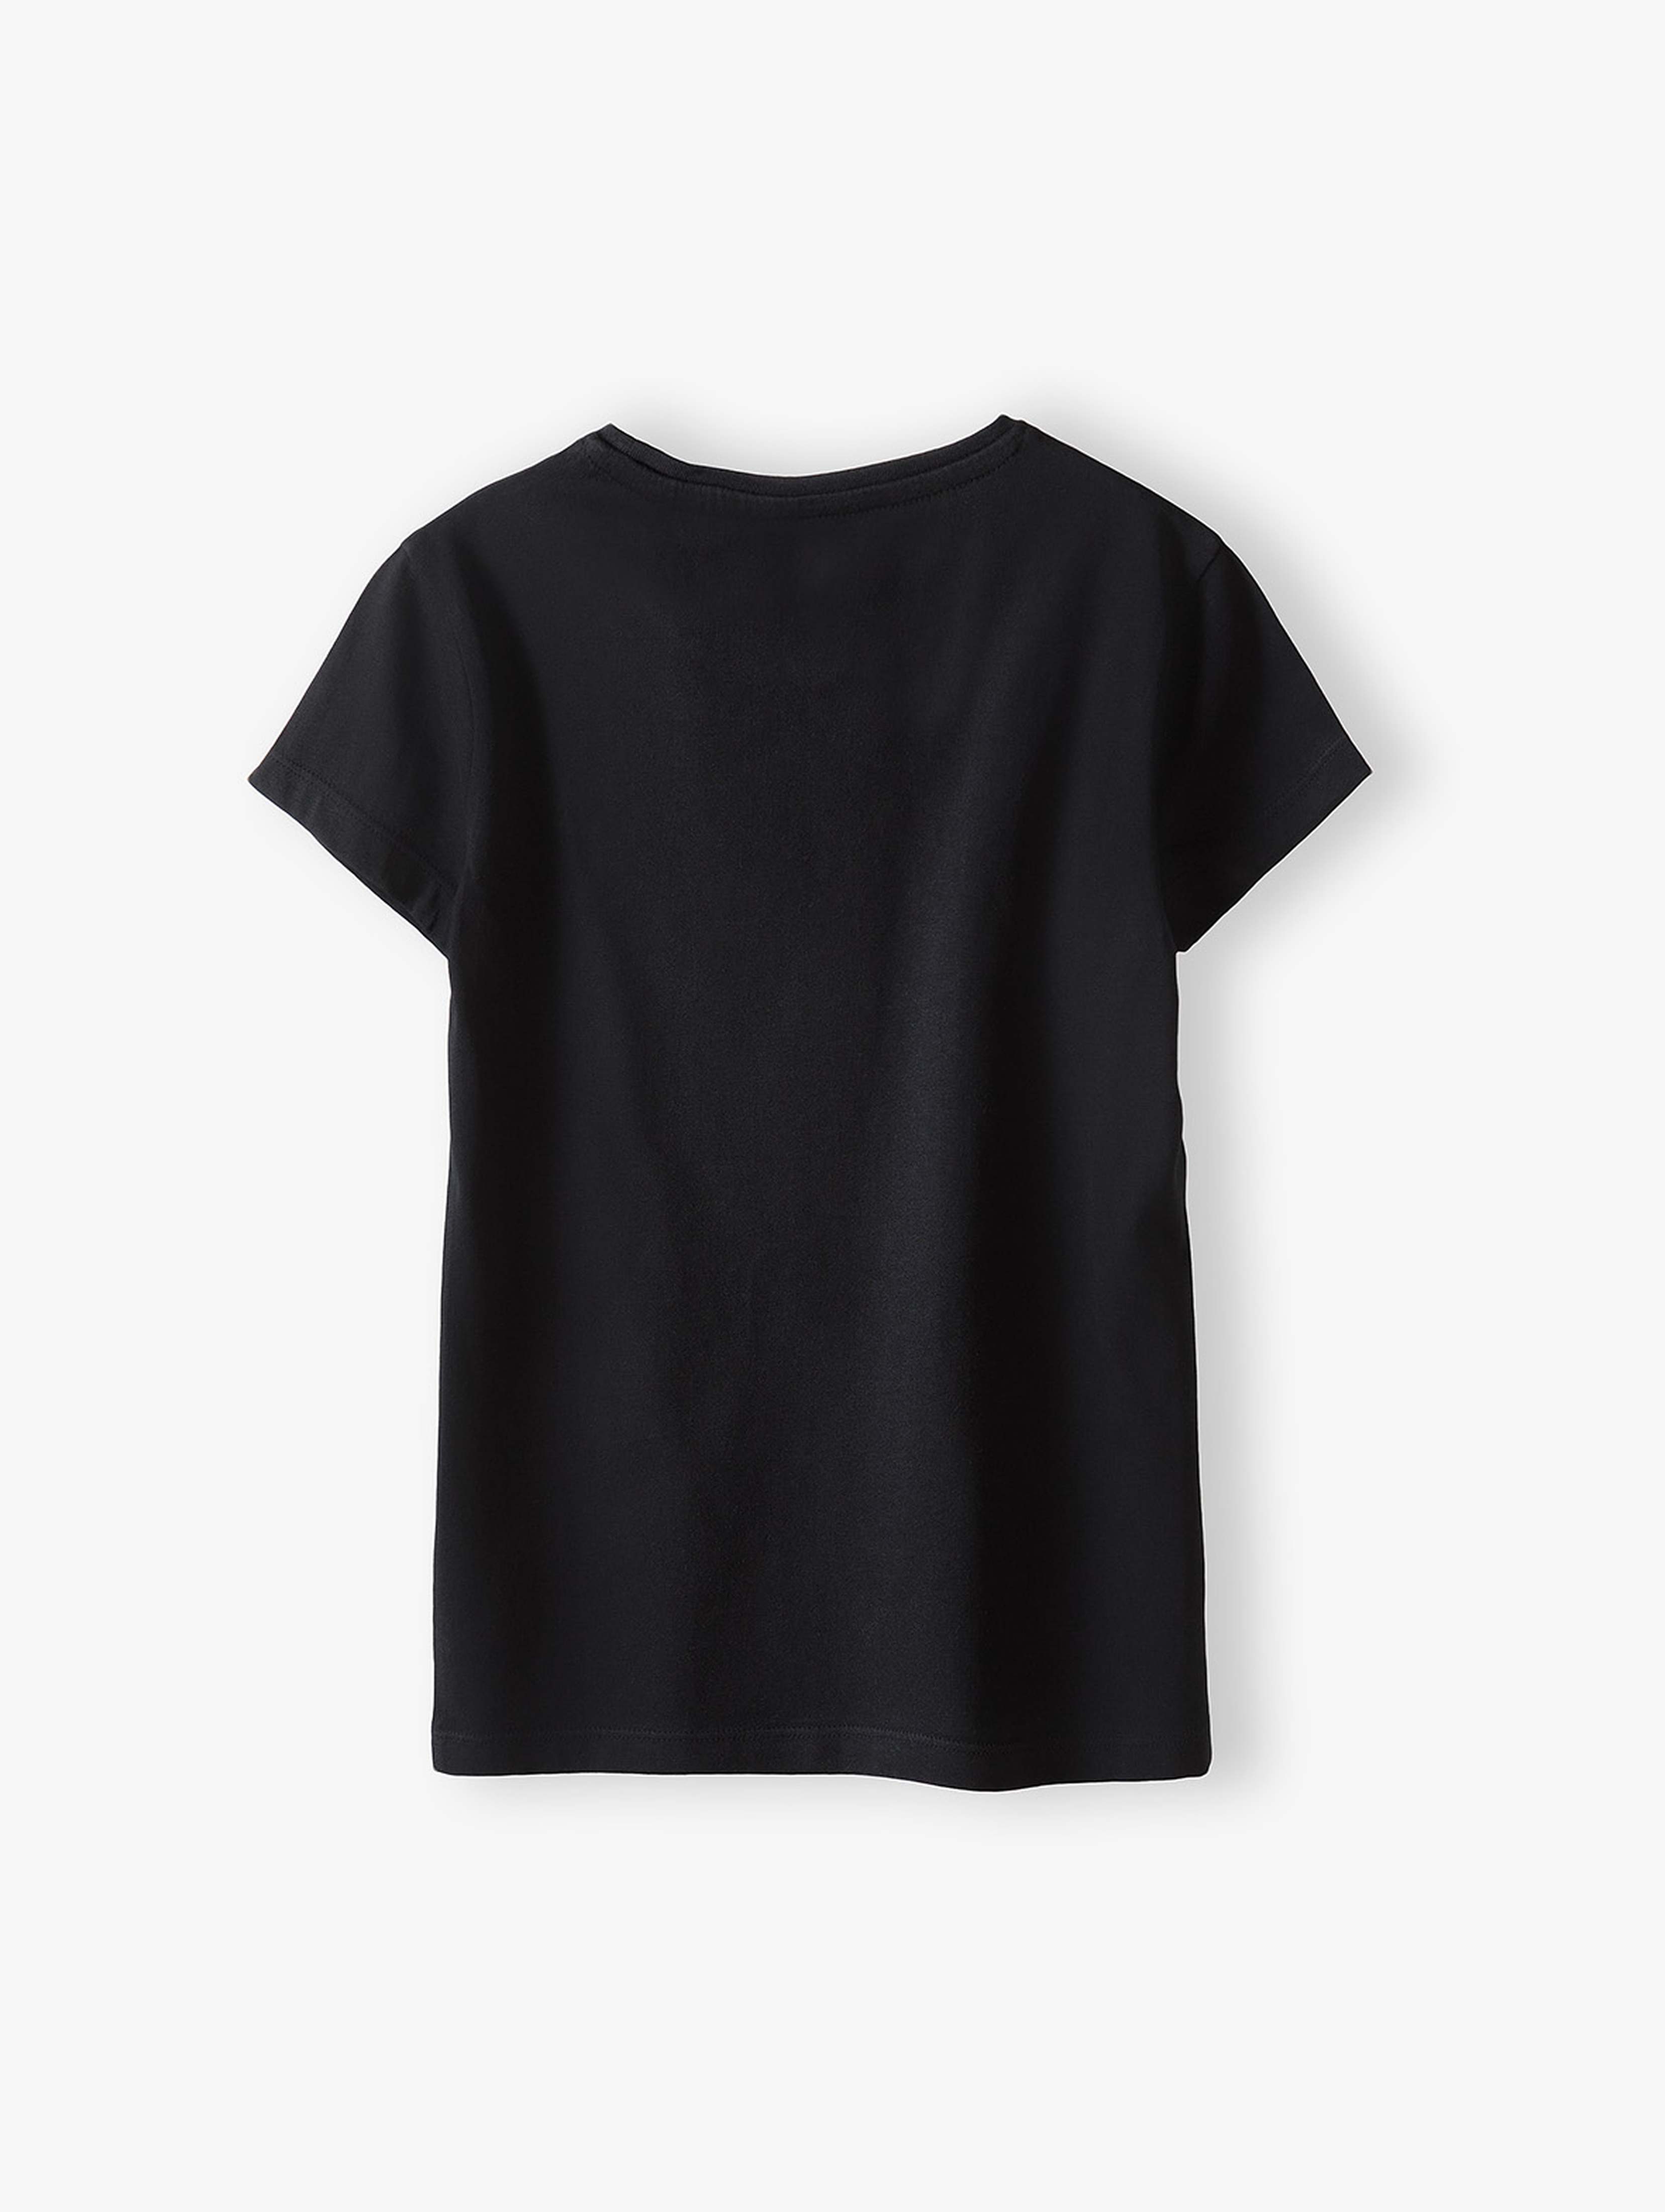 Czarny t-shirt bawełniany dla dziewczynki z napisem Have a nice day